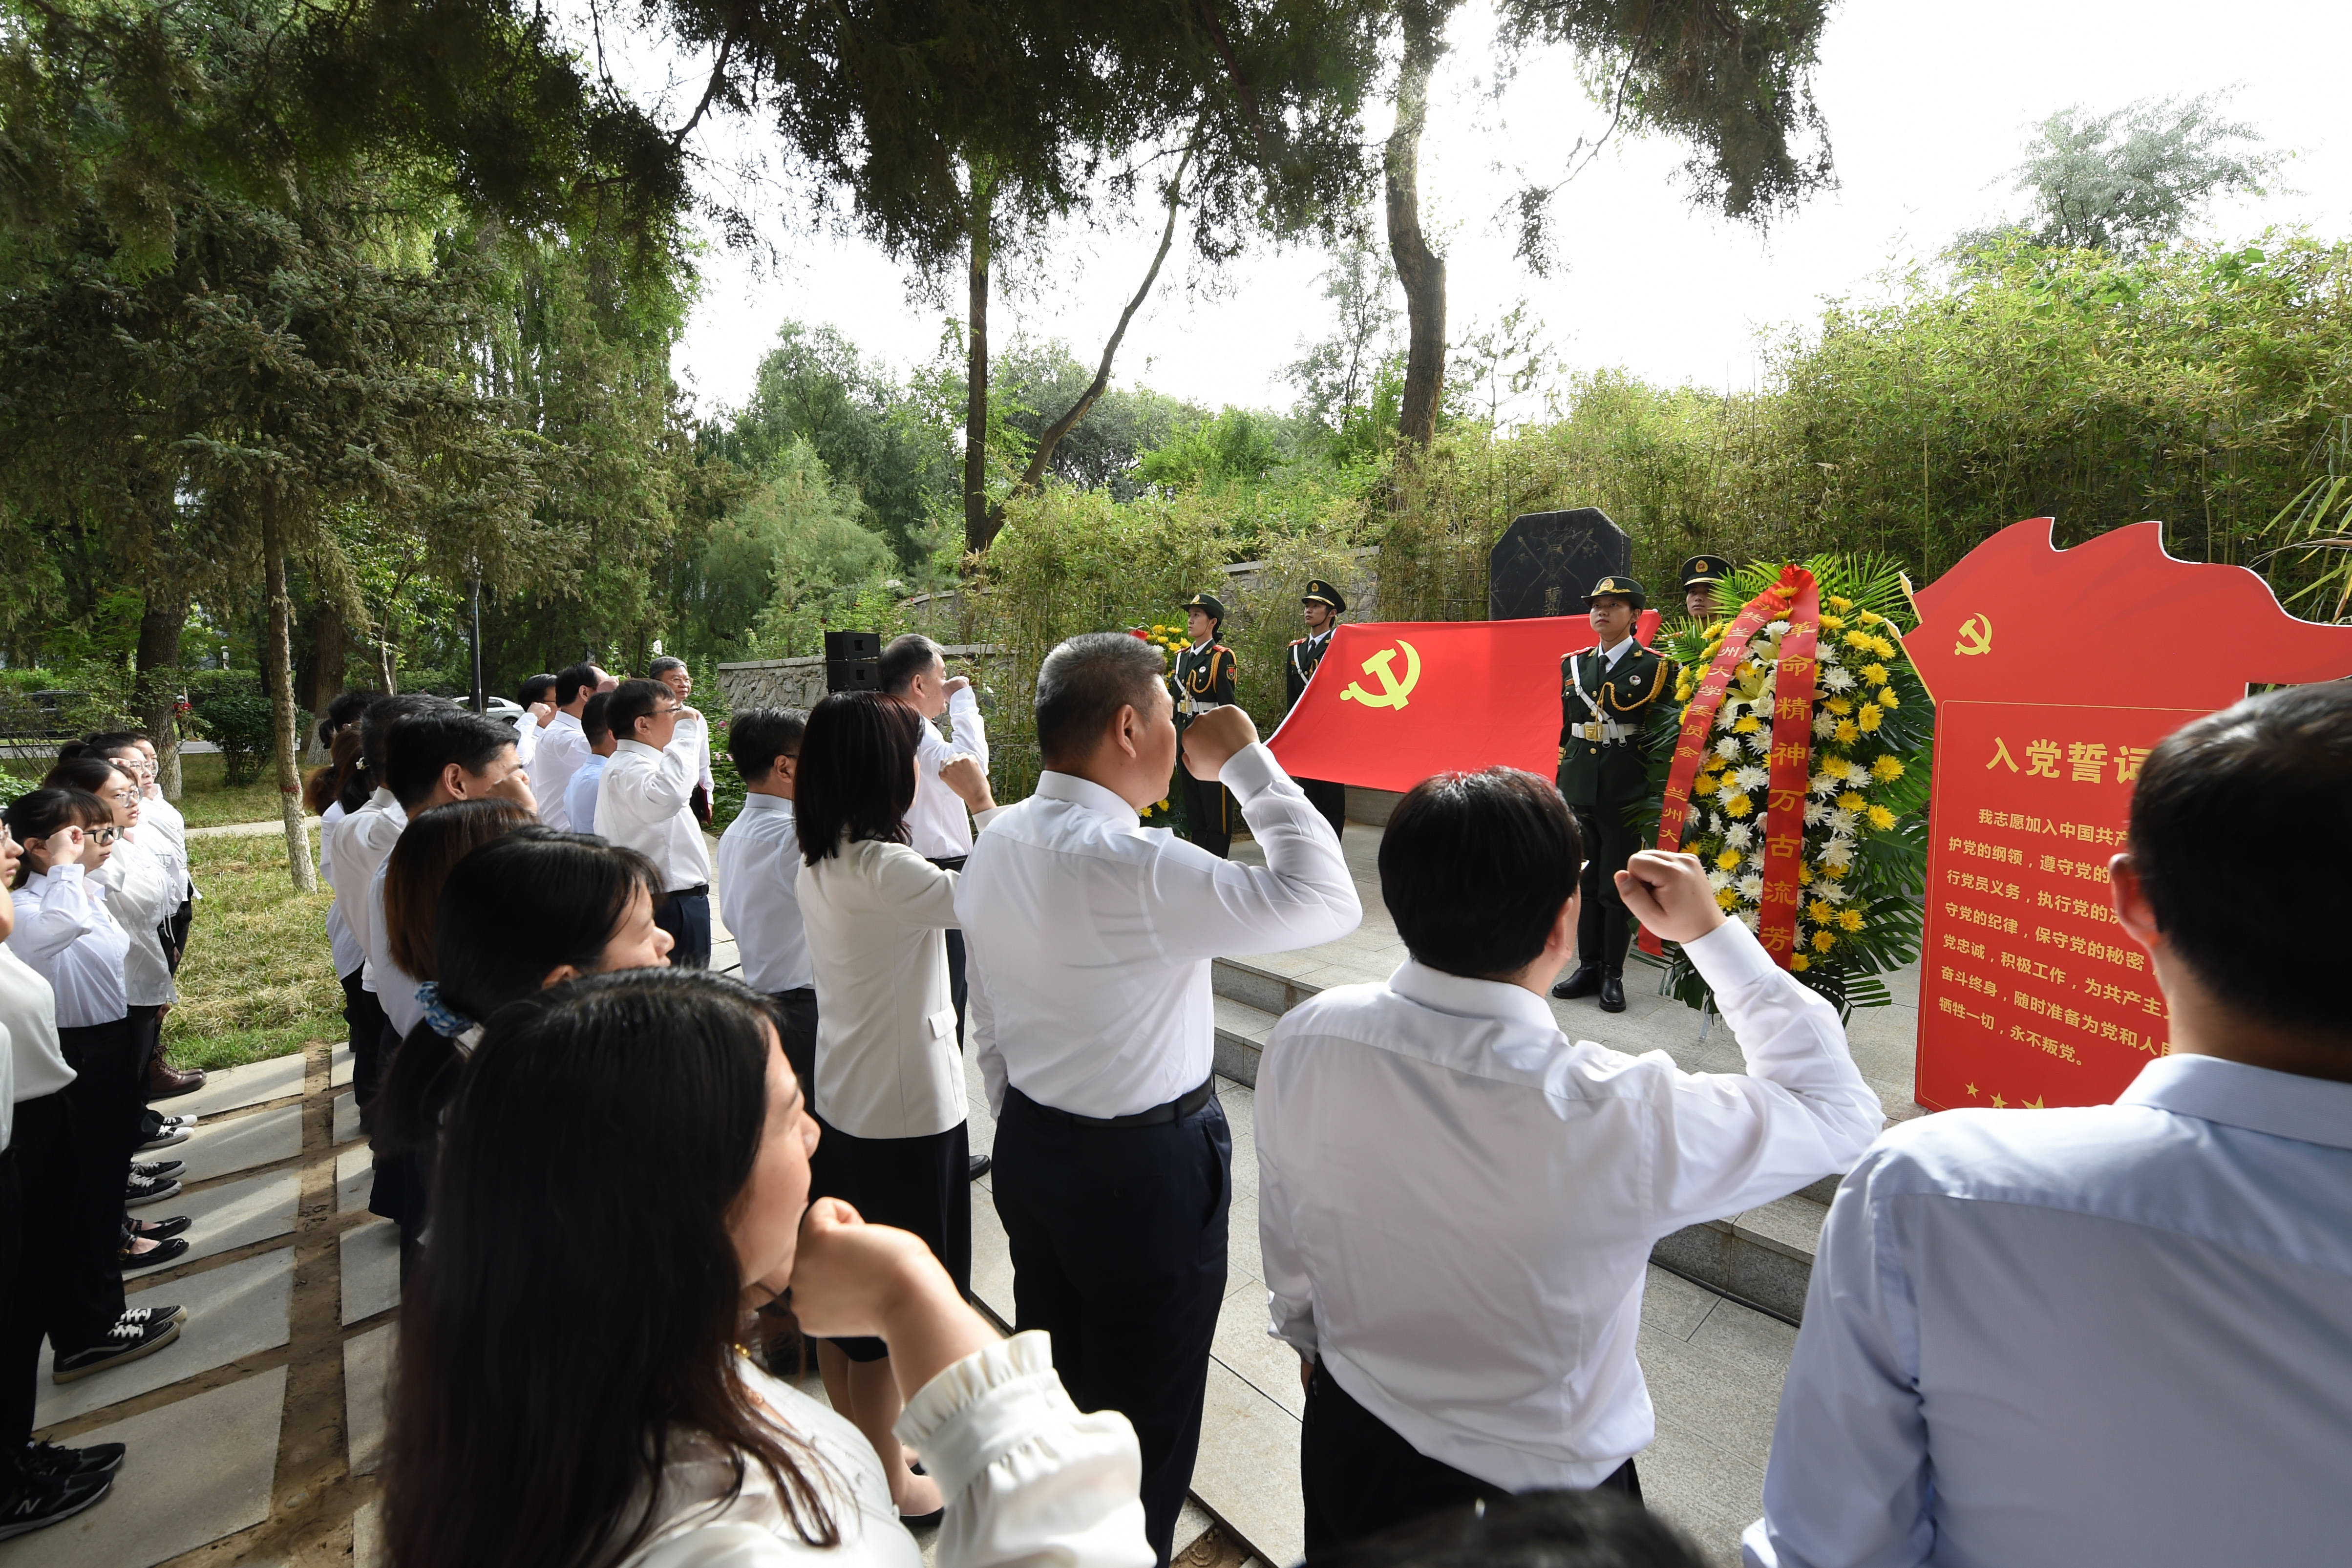 党员入党宣誓活动在此举行,人民英雄国家荣誉称号获得者张定宇领誓